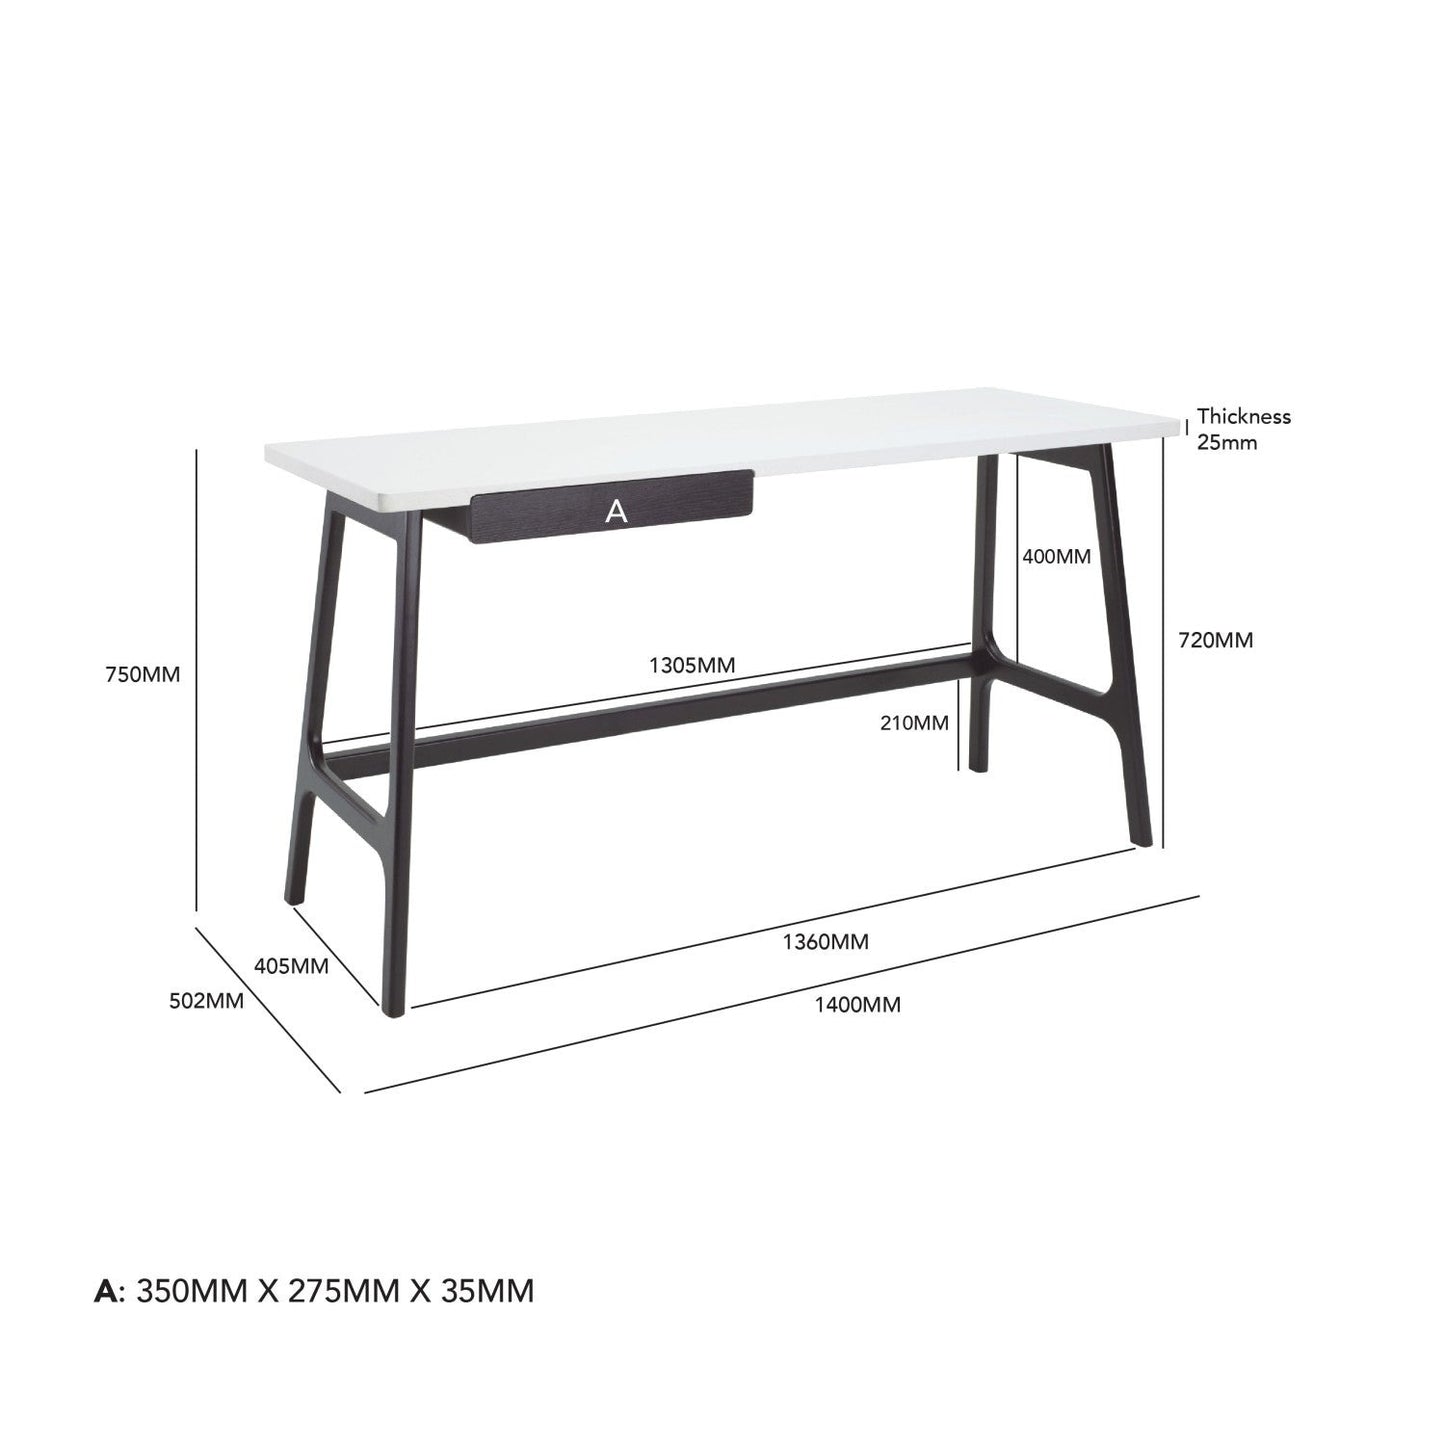 Moriko desk 1.4 meters